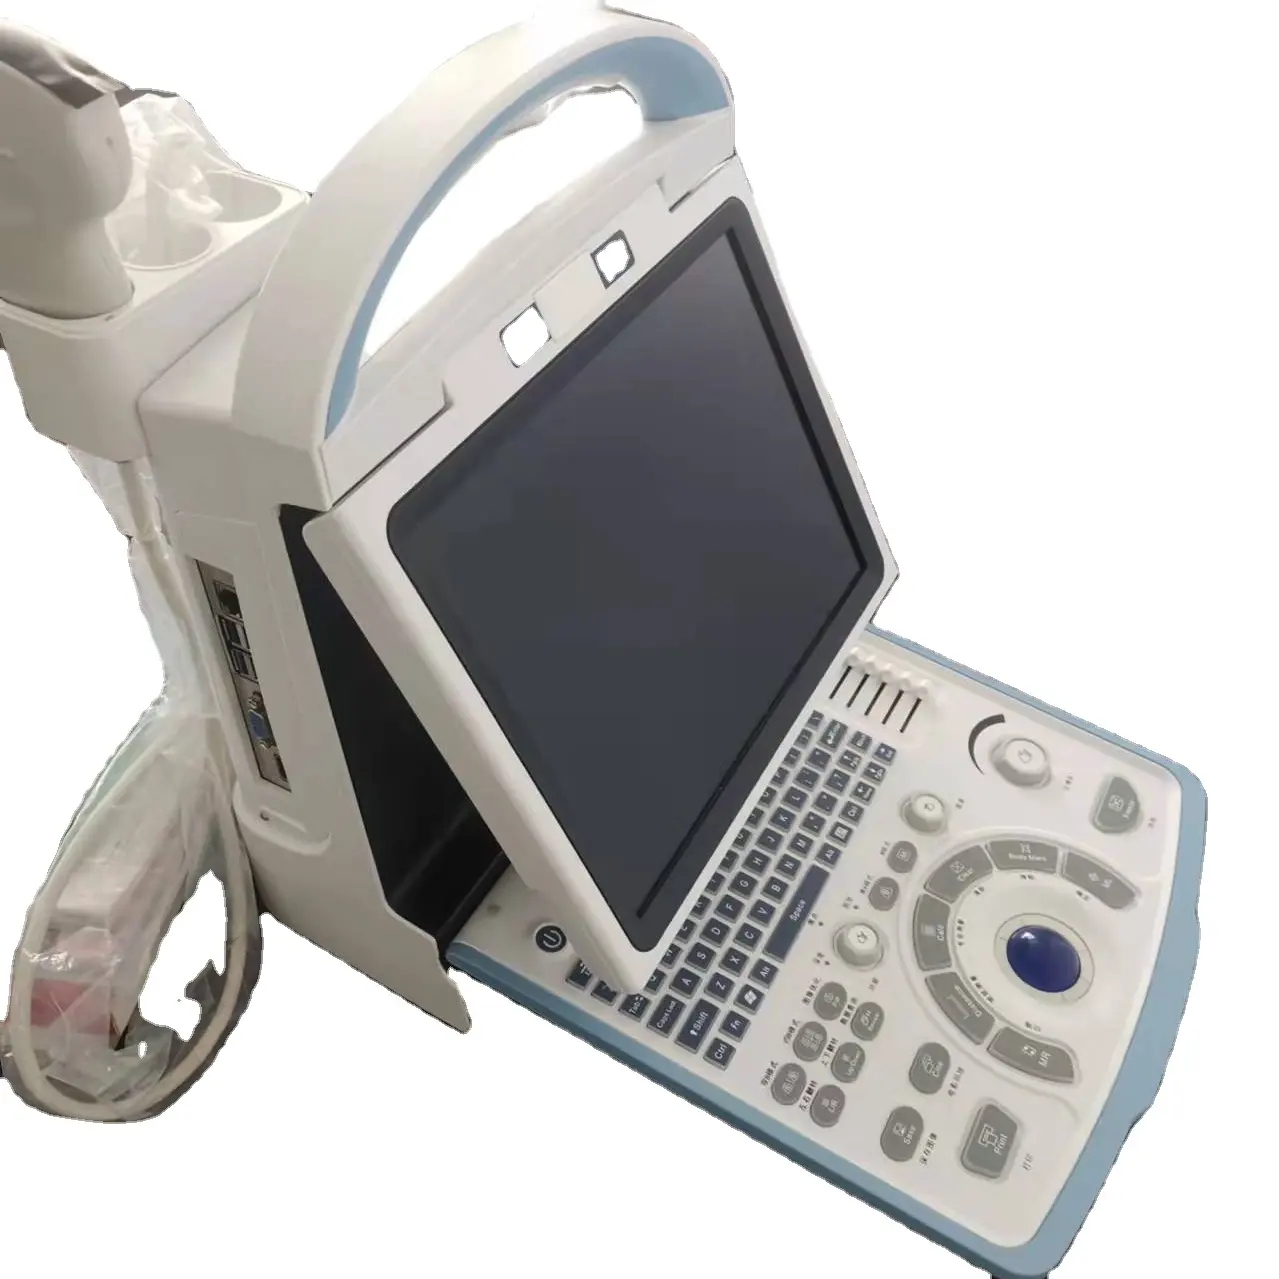 Ruihua fabricante veterinário máquina de ultrassom do veterinário scanner ultrassônico RH-300A modelo